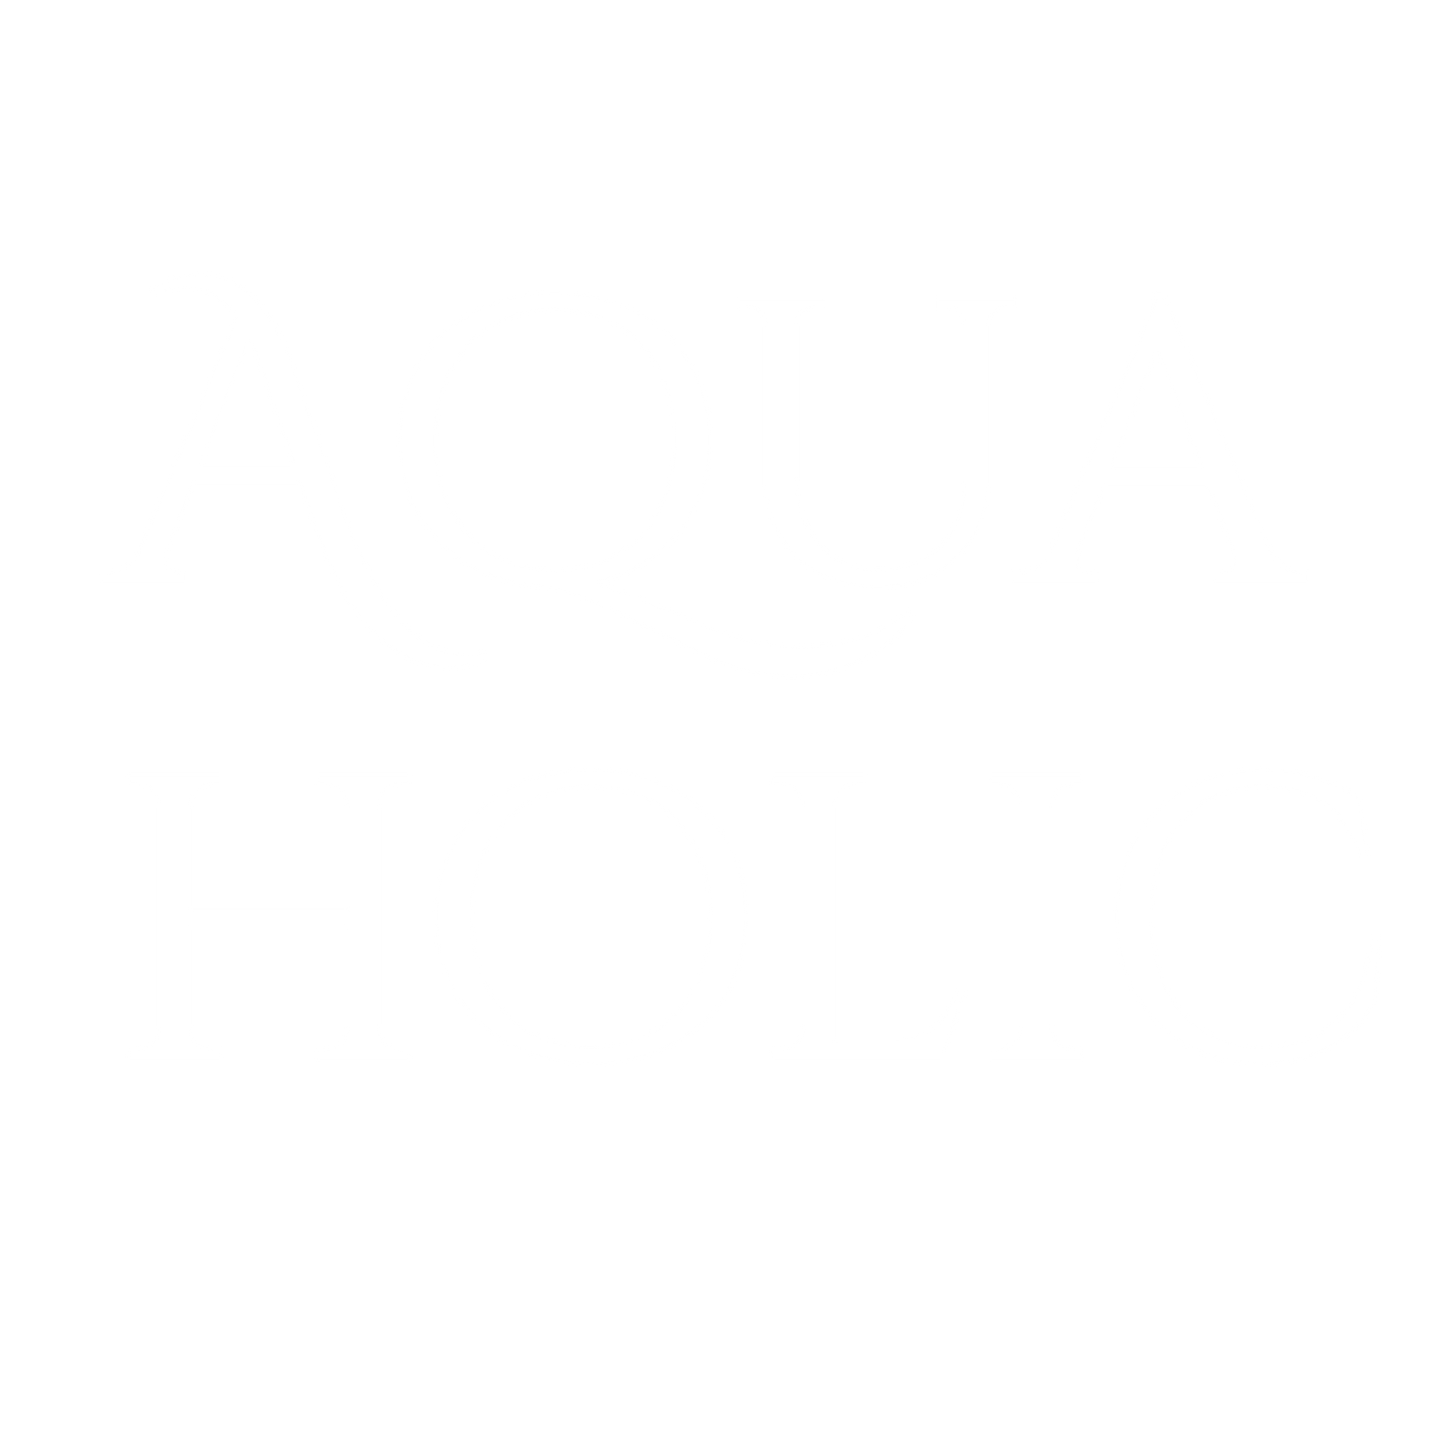 Aqua Holic